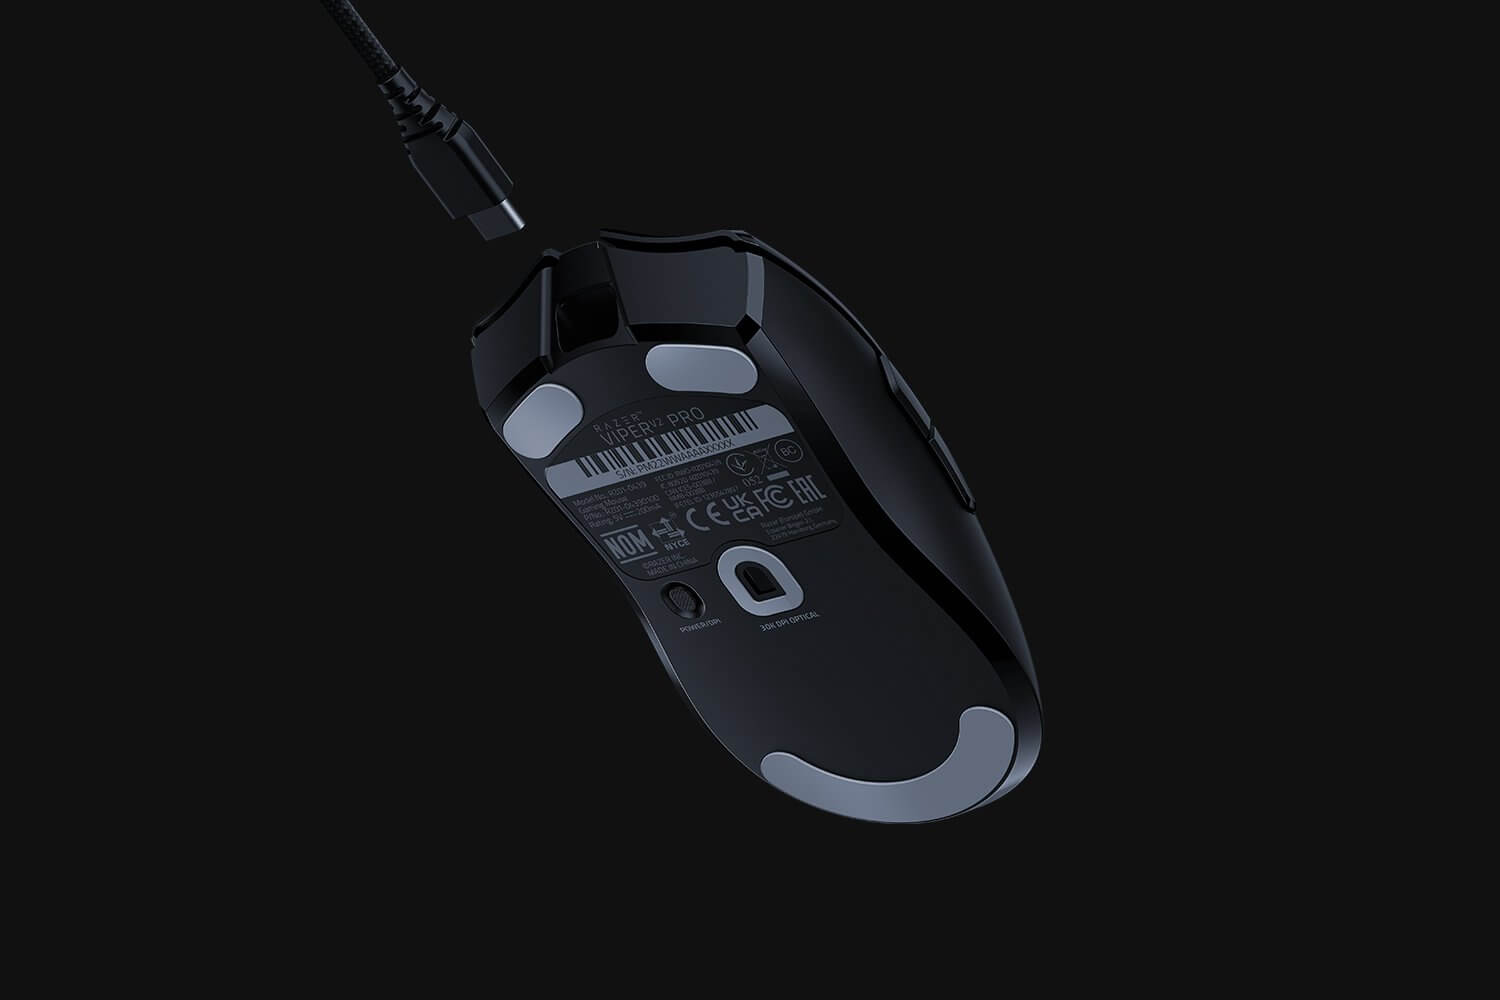 mouse-razer-viper-v2-pro-wireless-rz01-04390100-r3u1-4